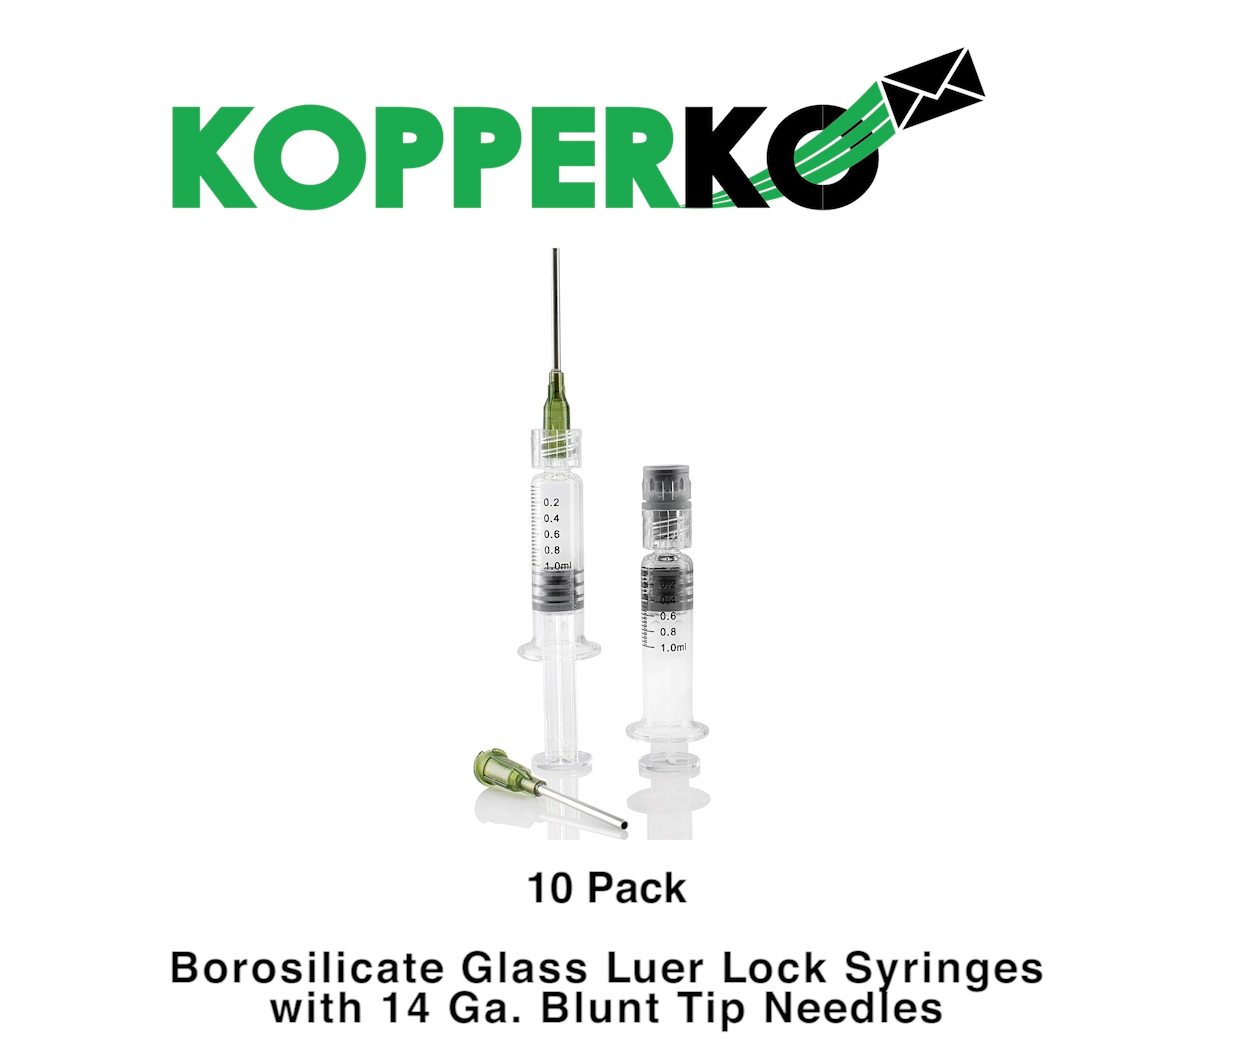 Kopperko 10 Pack Borosilicate Glass Luer Lock Syringes - Non